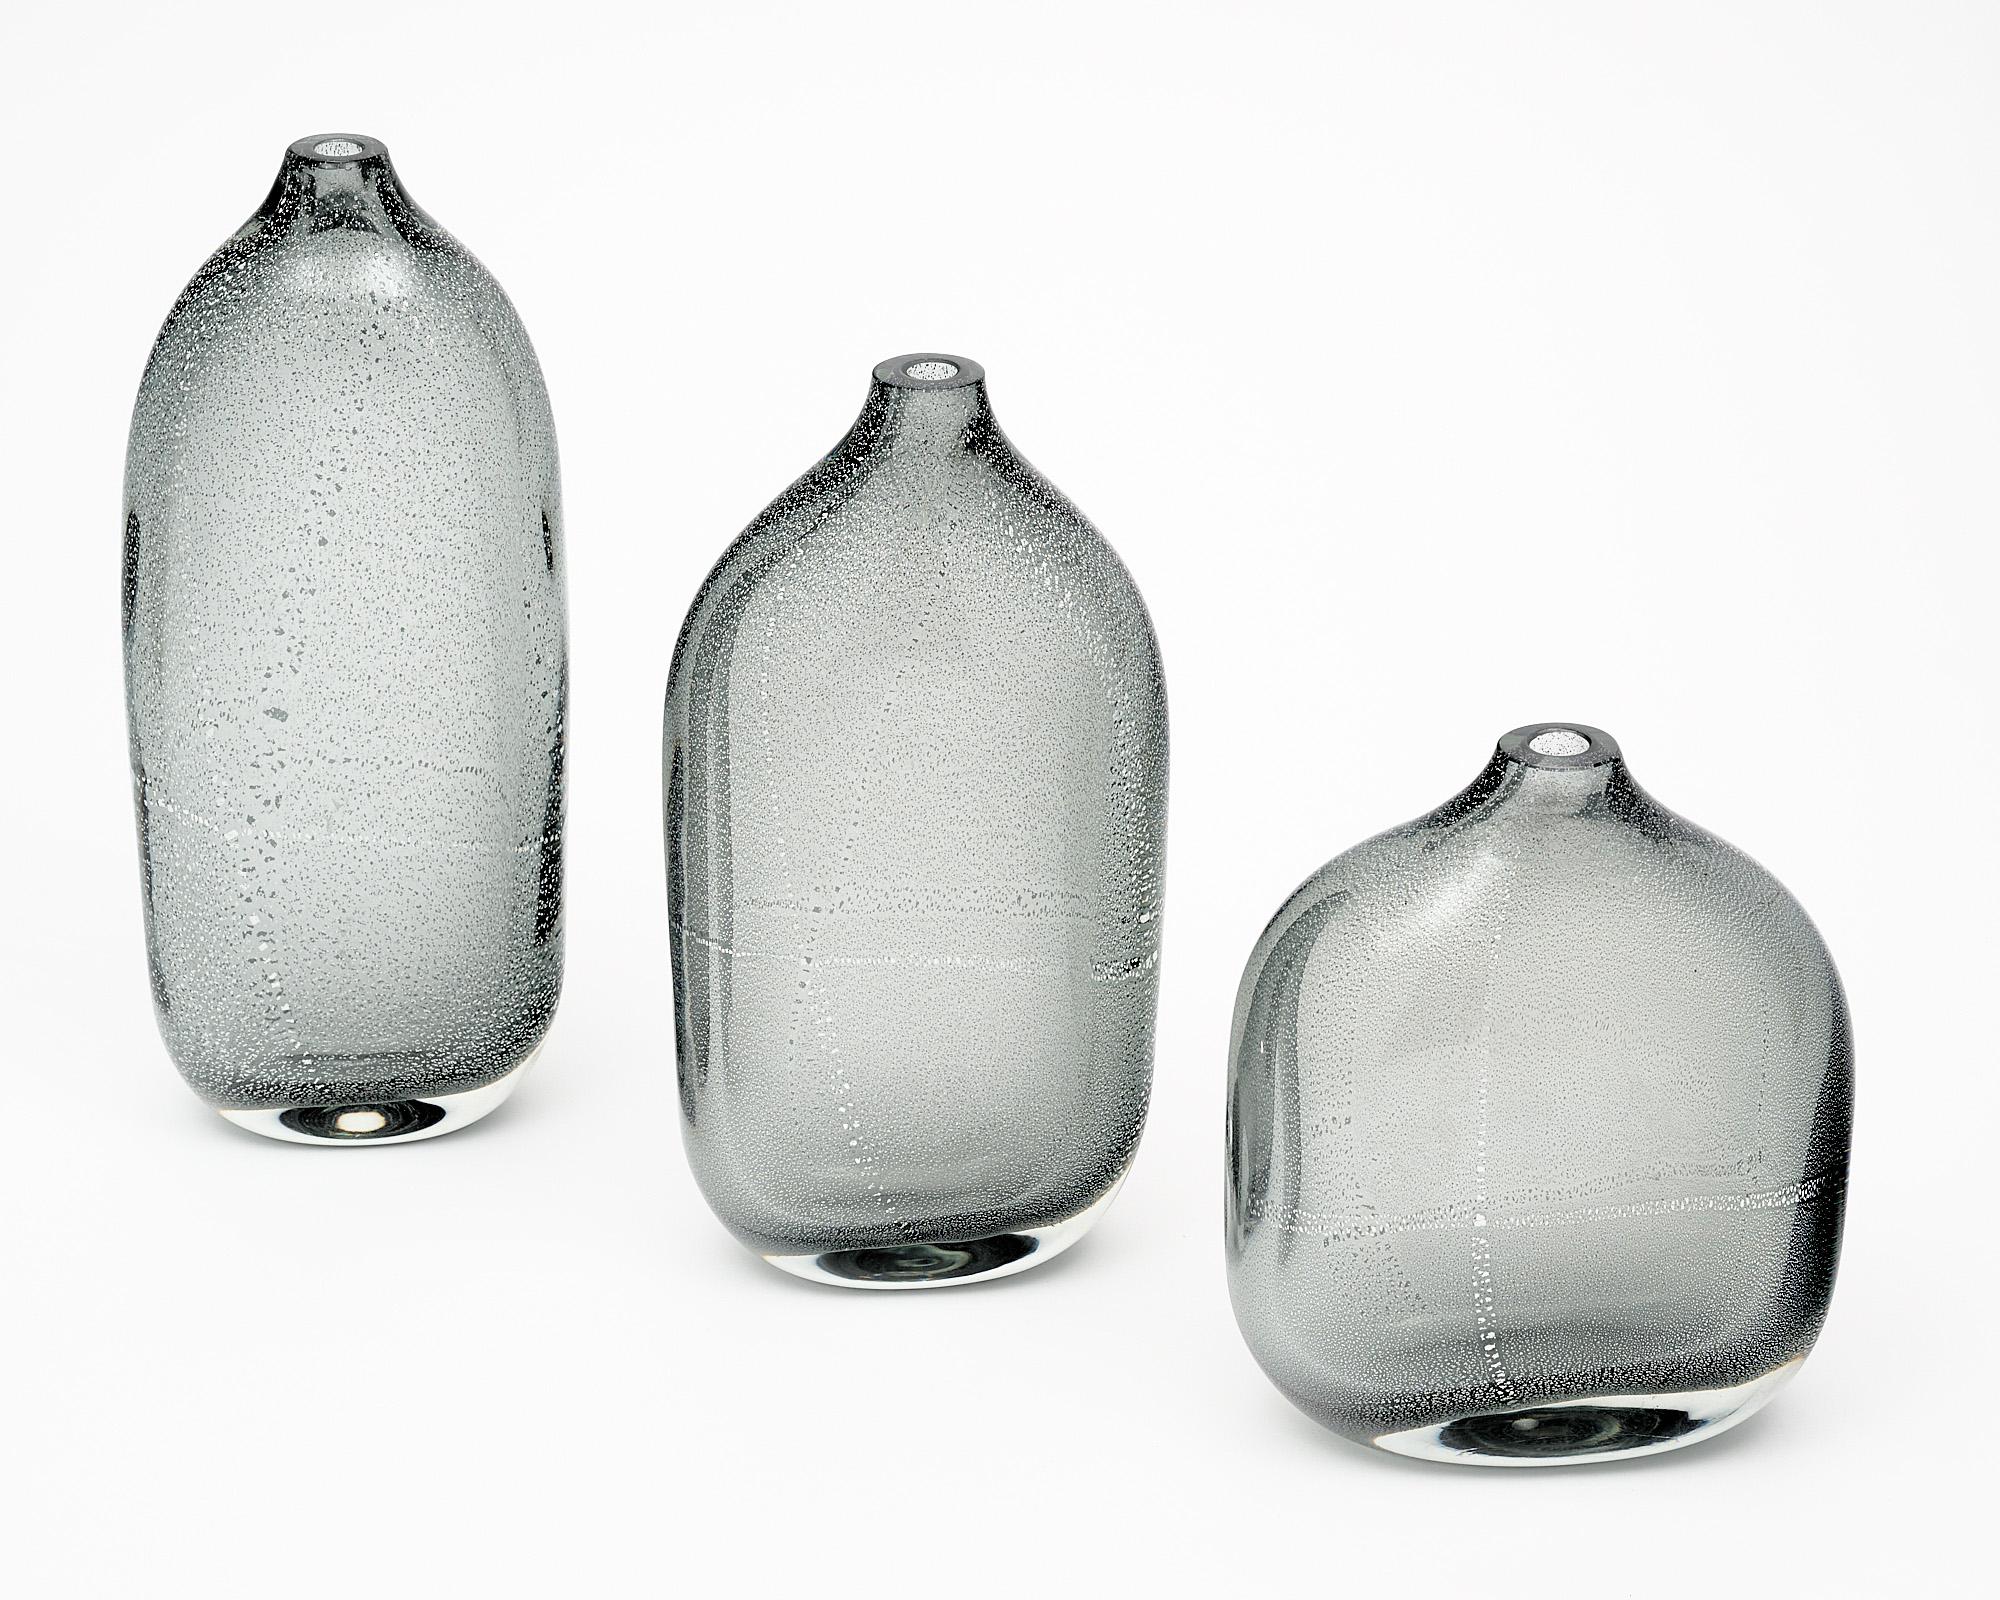 Satz von drei Vasen oder Flaschen aus mundgeblasenem Murano-Glas. Jedes Stück wird mit der Avventurina-Technik hergestellt, bei der Blattsilber während des Glasblasens in das Glas eingeschmolzen wird. Der Preis bezieht sich auf einen Satz von drei